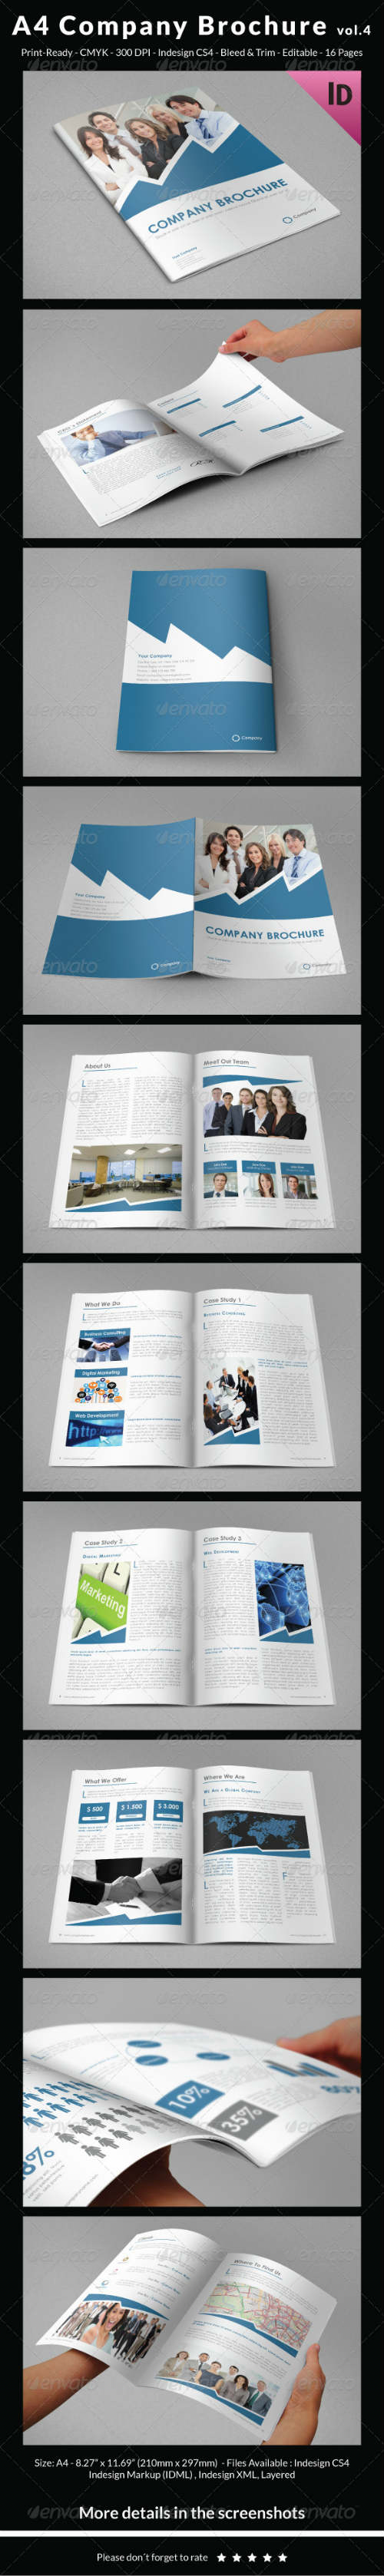 A4 Company Brochure vol4 id 6830235